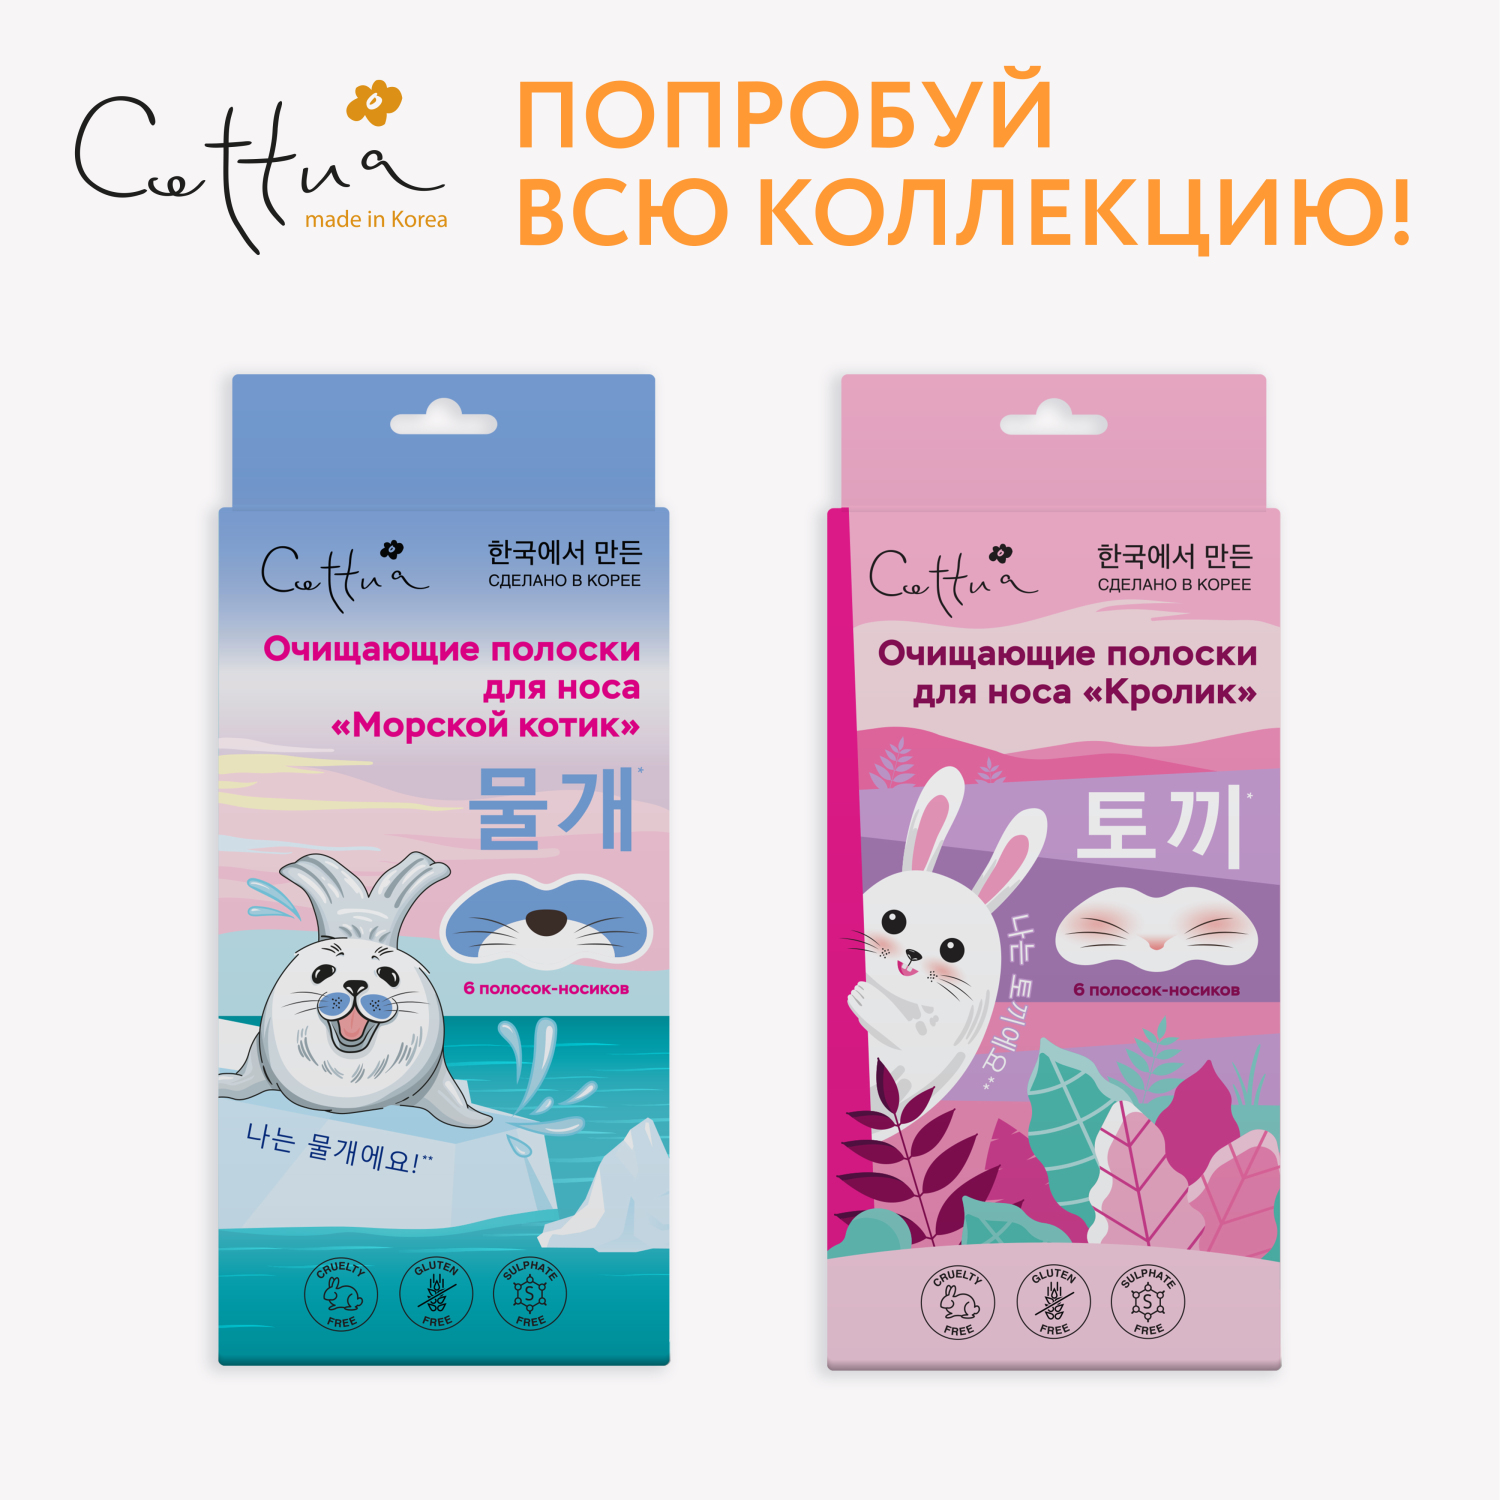 Очищающие полоски для носа CETTUA "Кролик", 6 шт